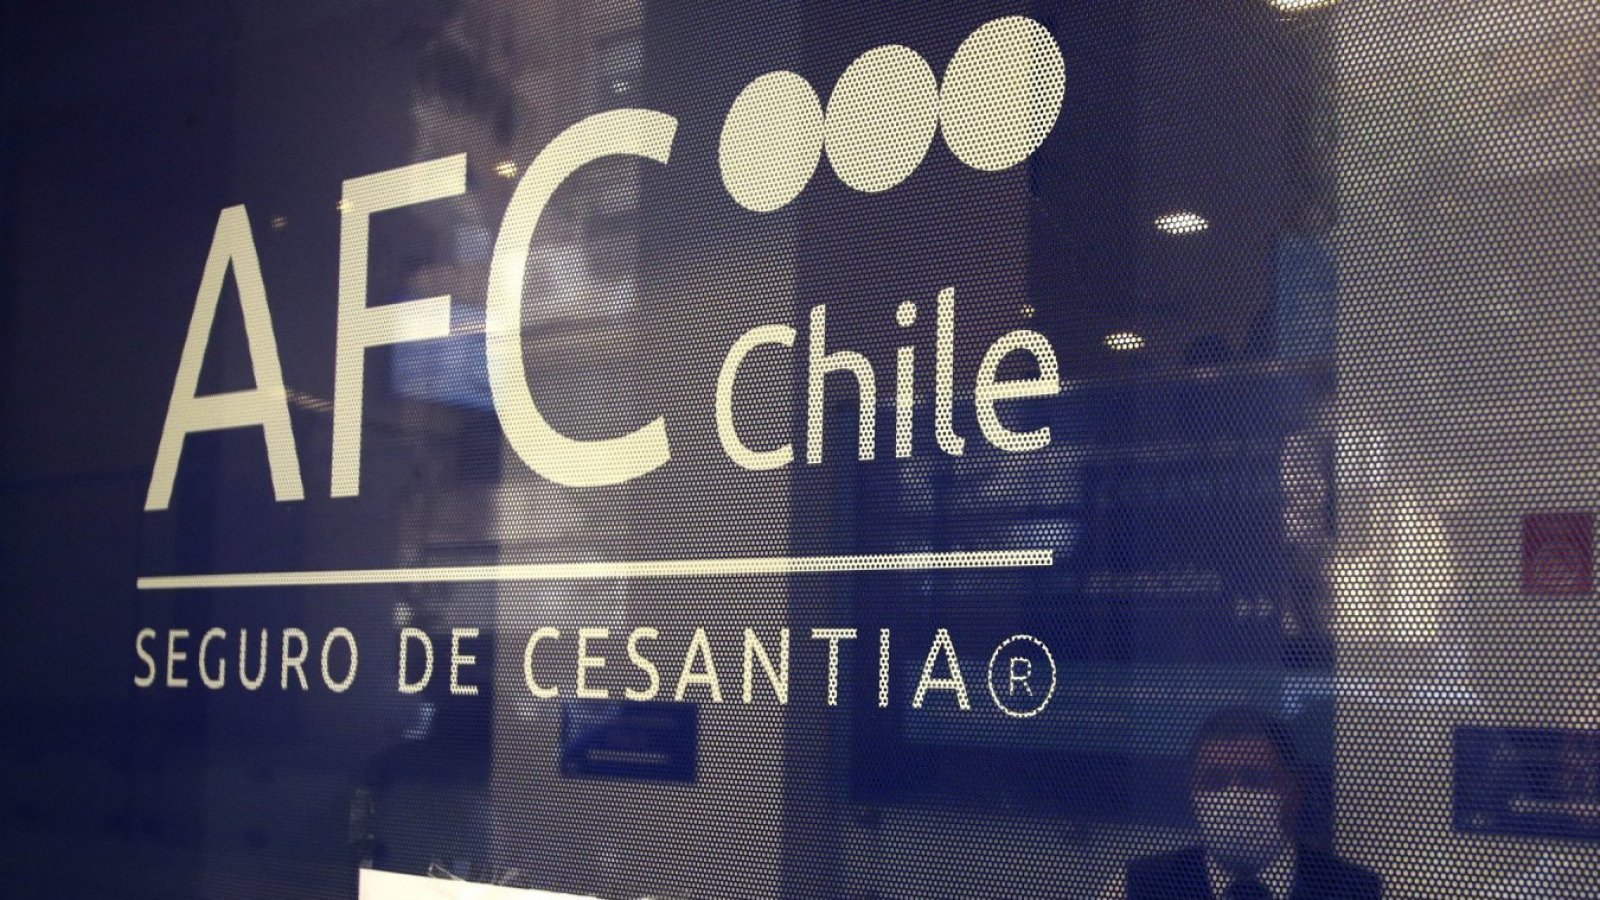 Seguro de Cesantía. AFC Chile.